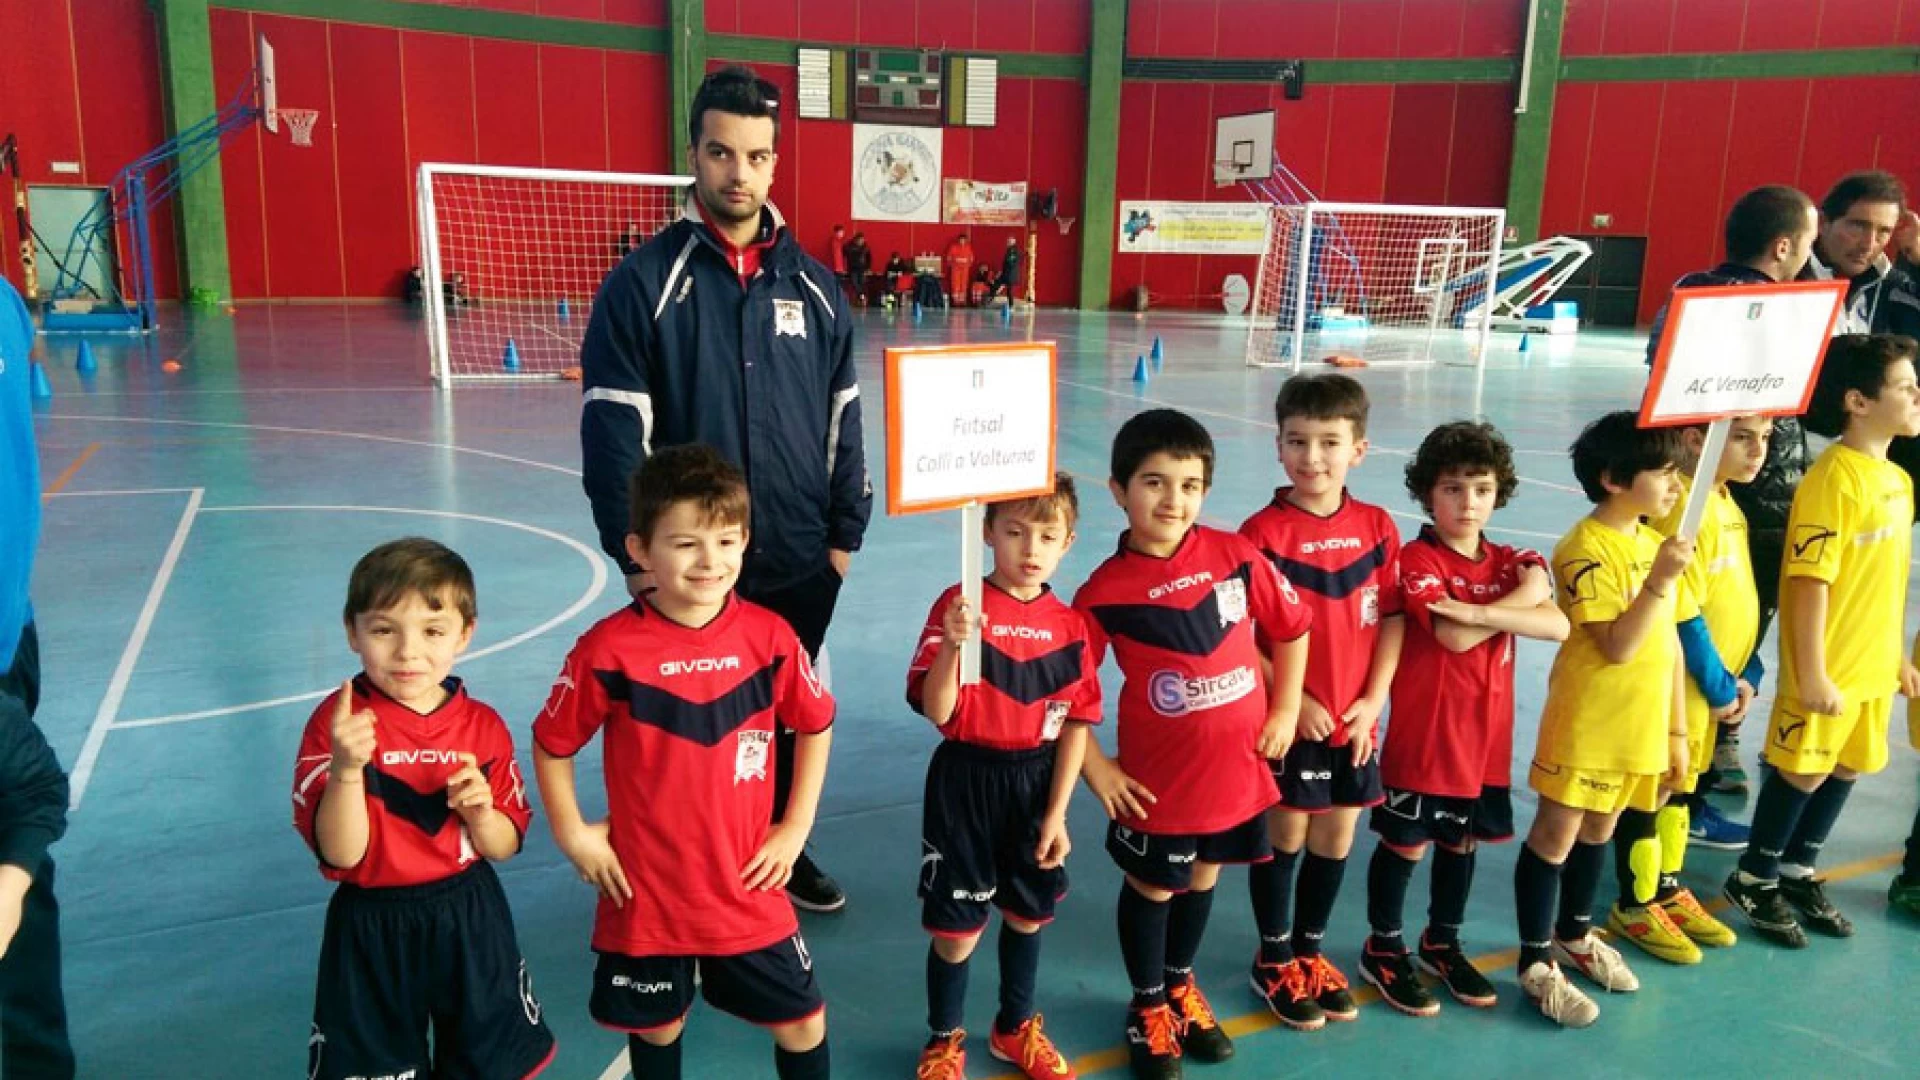 Colli a Volturno: i piccoli atleti della Futsal protagonisti stamane a Castel Di Sangro in occasione della giornata dello sport. Per loro esibizioni varie e mini partite.